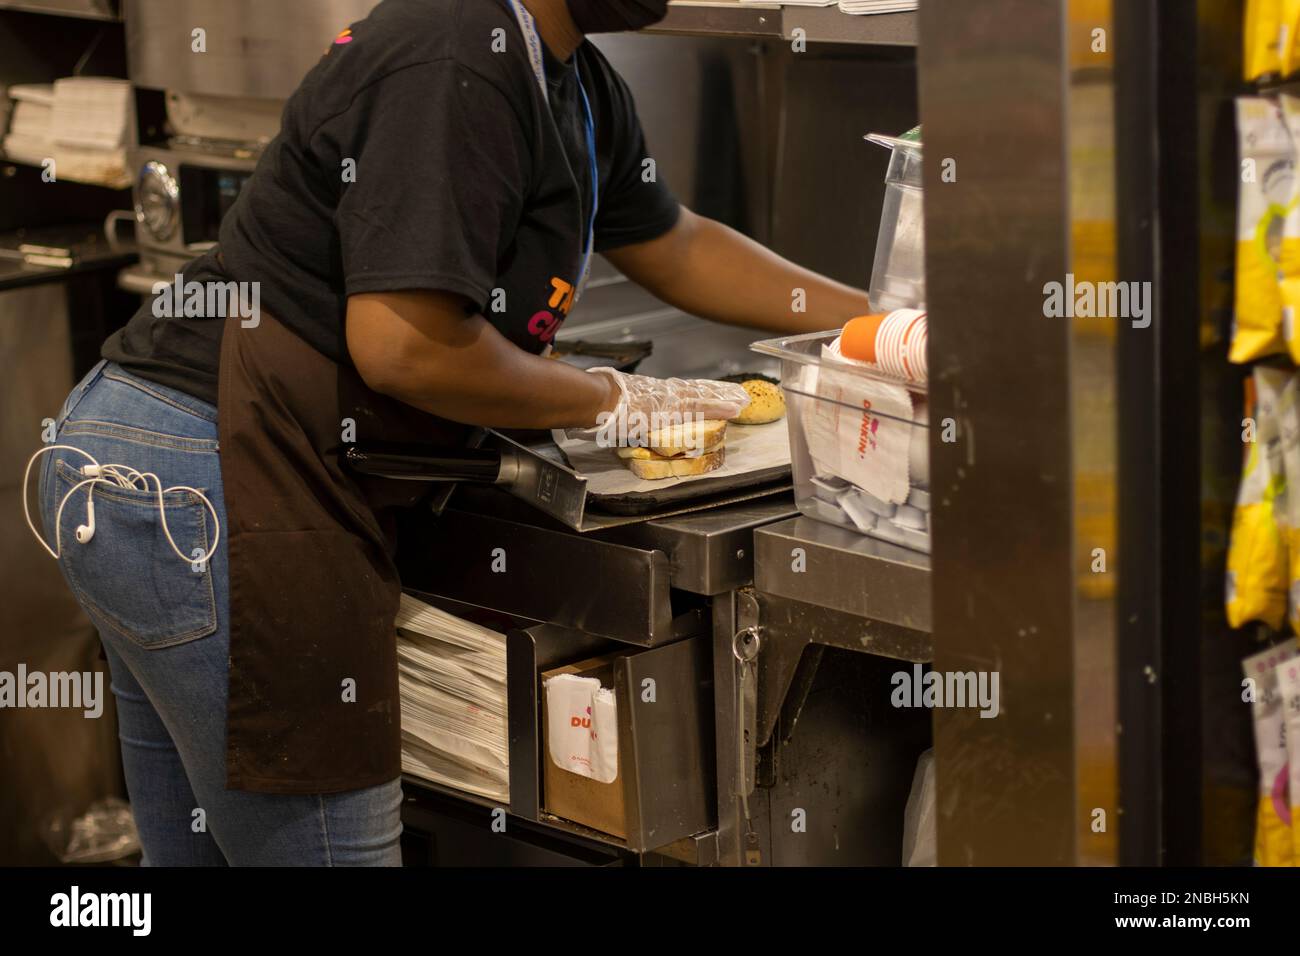 Un travailleur est vu faire un sandwich dans la cuisine d'un magasin Dunkin' Donuts dans le terminal de l'aéroport international John F. Kennedy... Banque D'Images